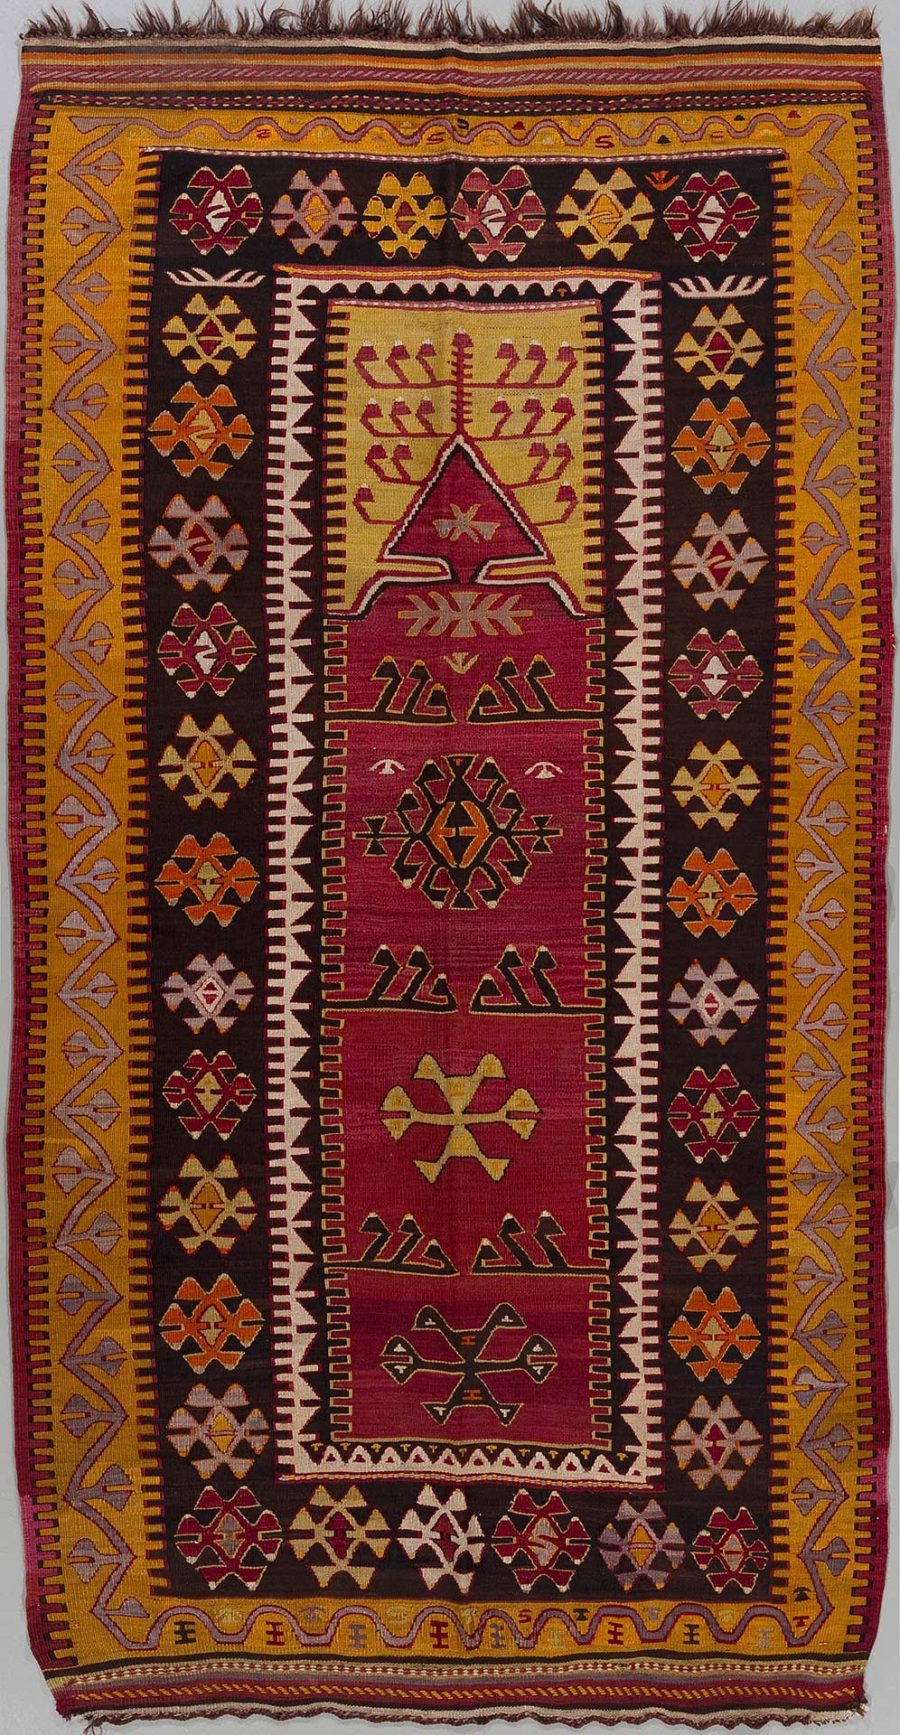 Traditioneller handgewebter Teppich mit geometrischen Mustern und Symbolen in Rot-, Braun-, Gelb- und Weißtönen, mit aufwändigen Bordüren und zentralem Medaillon-Design.